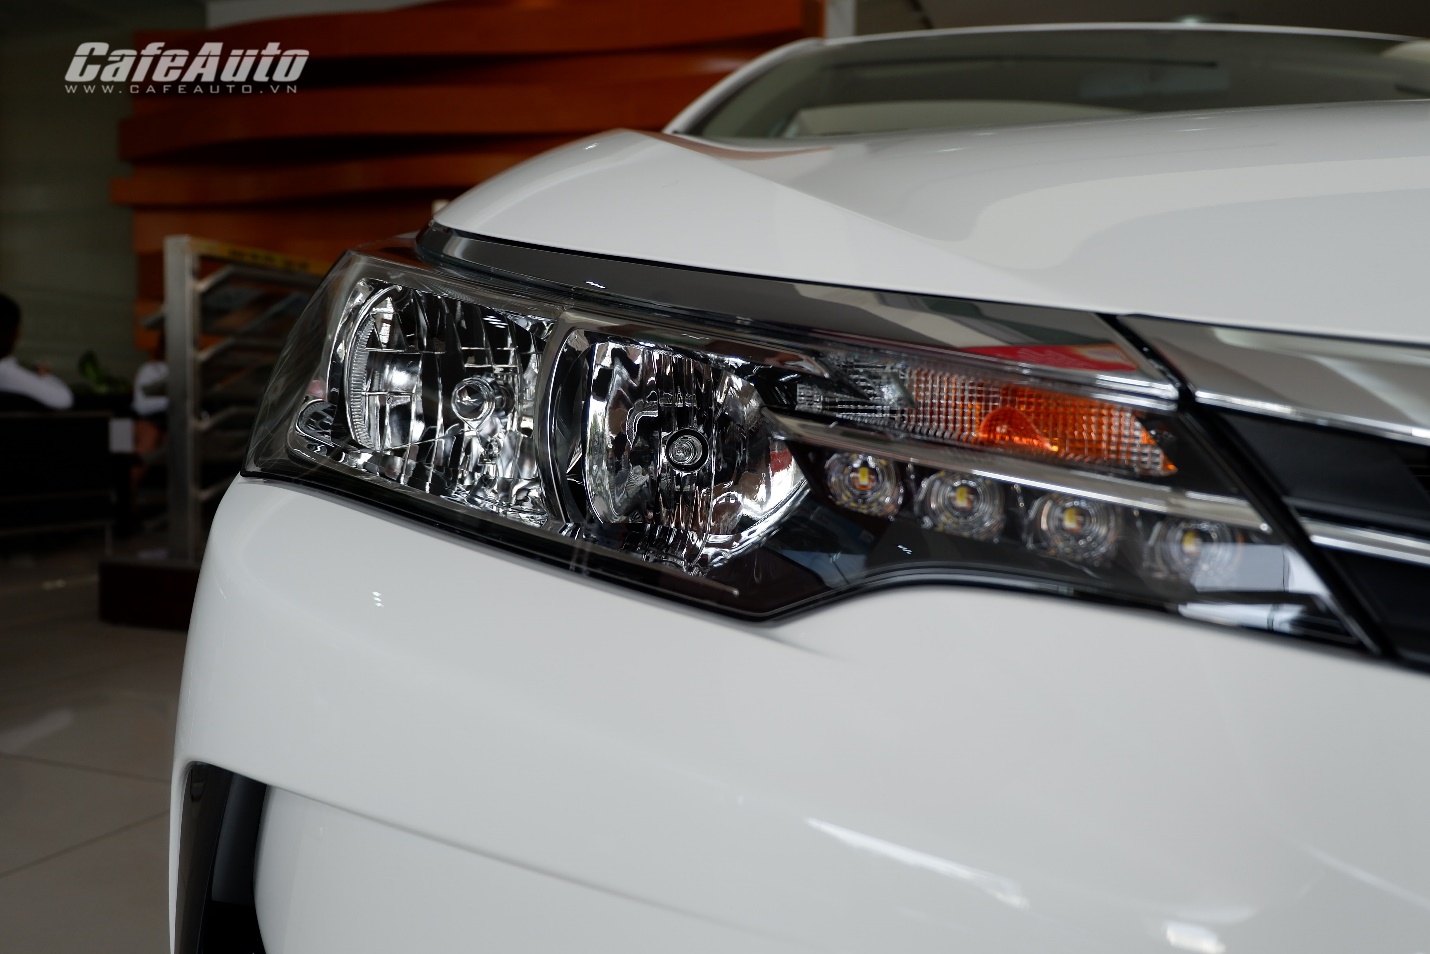 Toyota Corolla Altis phiên bản nâng cấp: bổ sung hệ thống Cruise Control, giá tăng nhẹ - ảnh 5